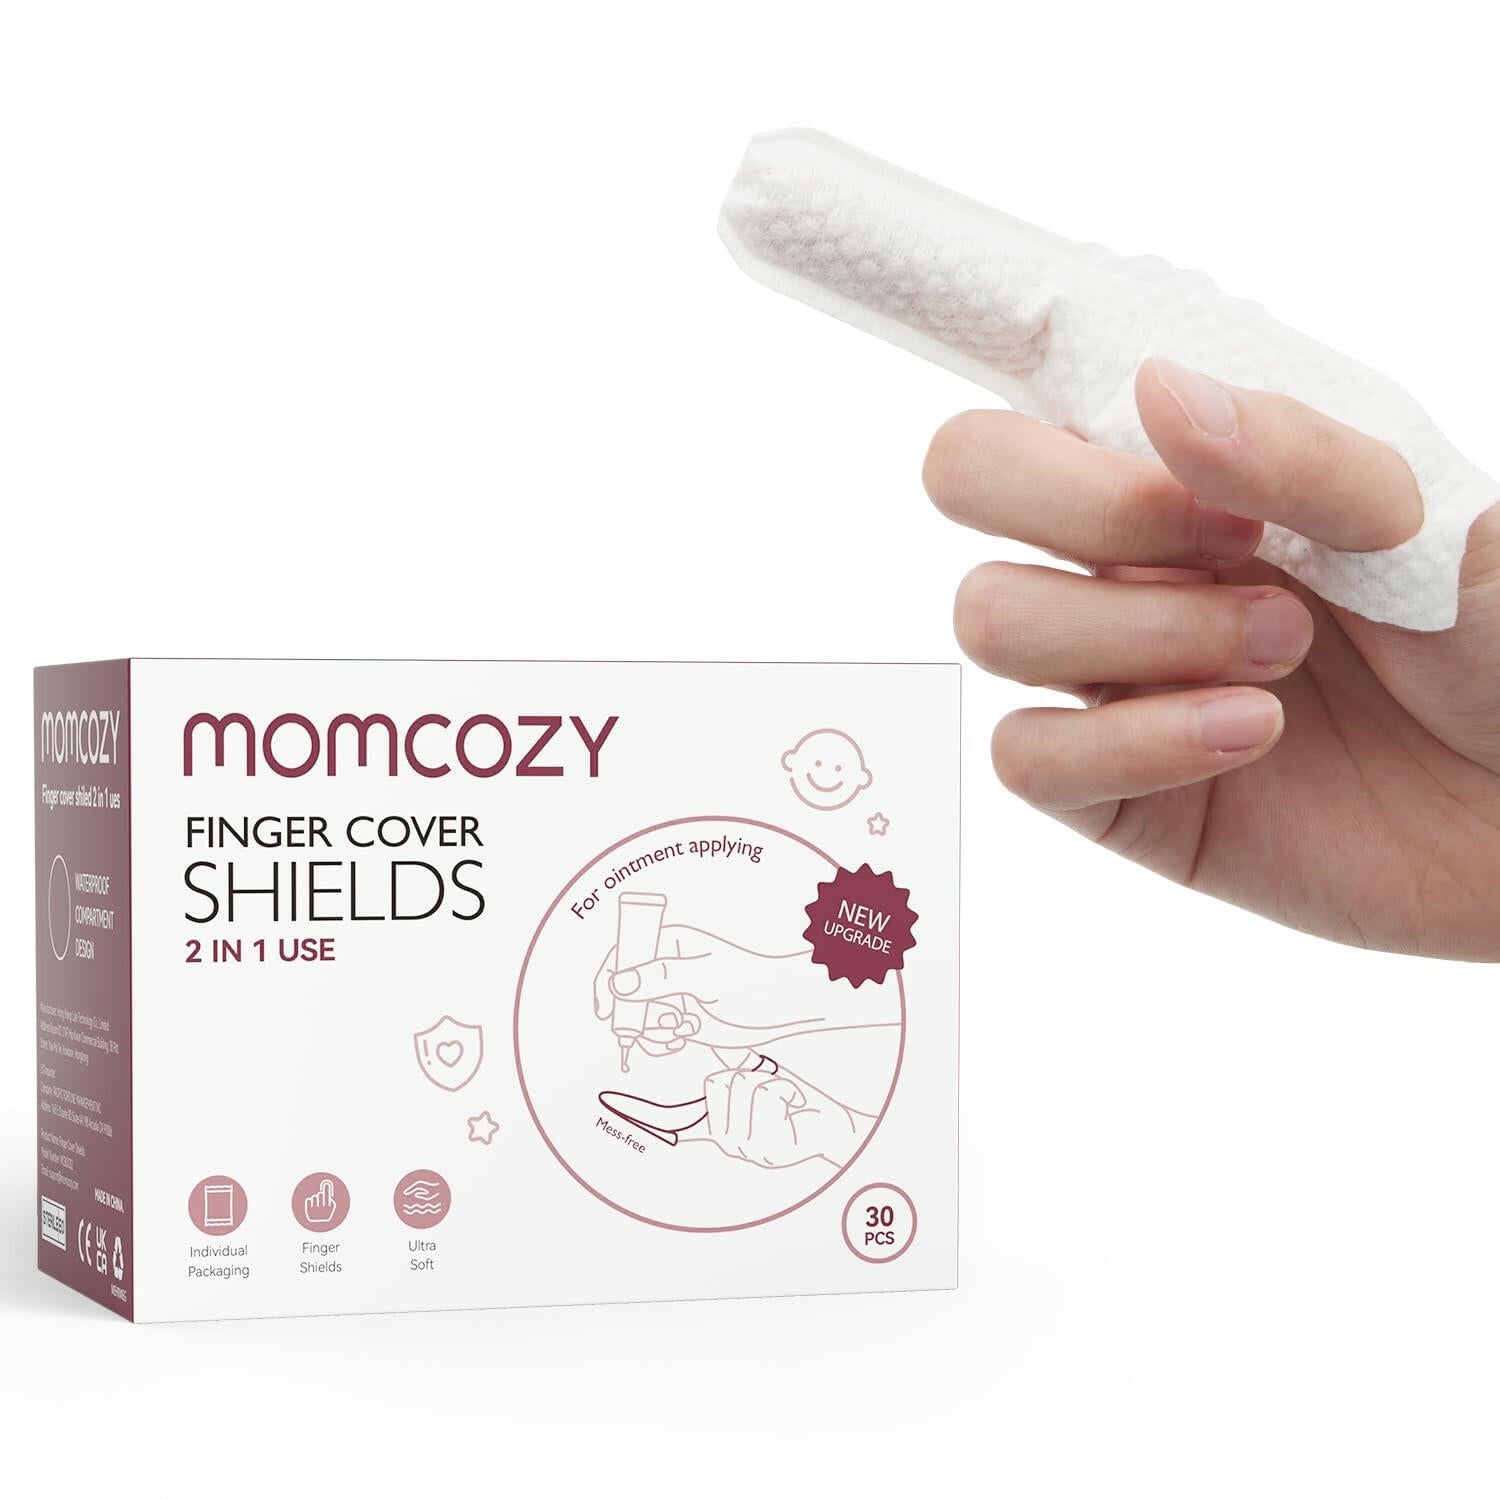 Momcozy 2-in-1 Finger Cover Shields, 30 pcs